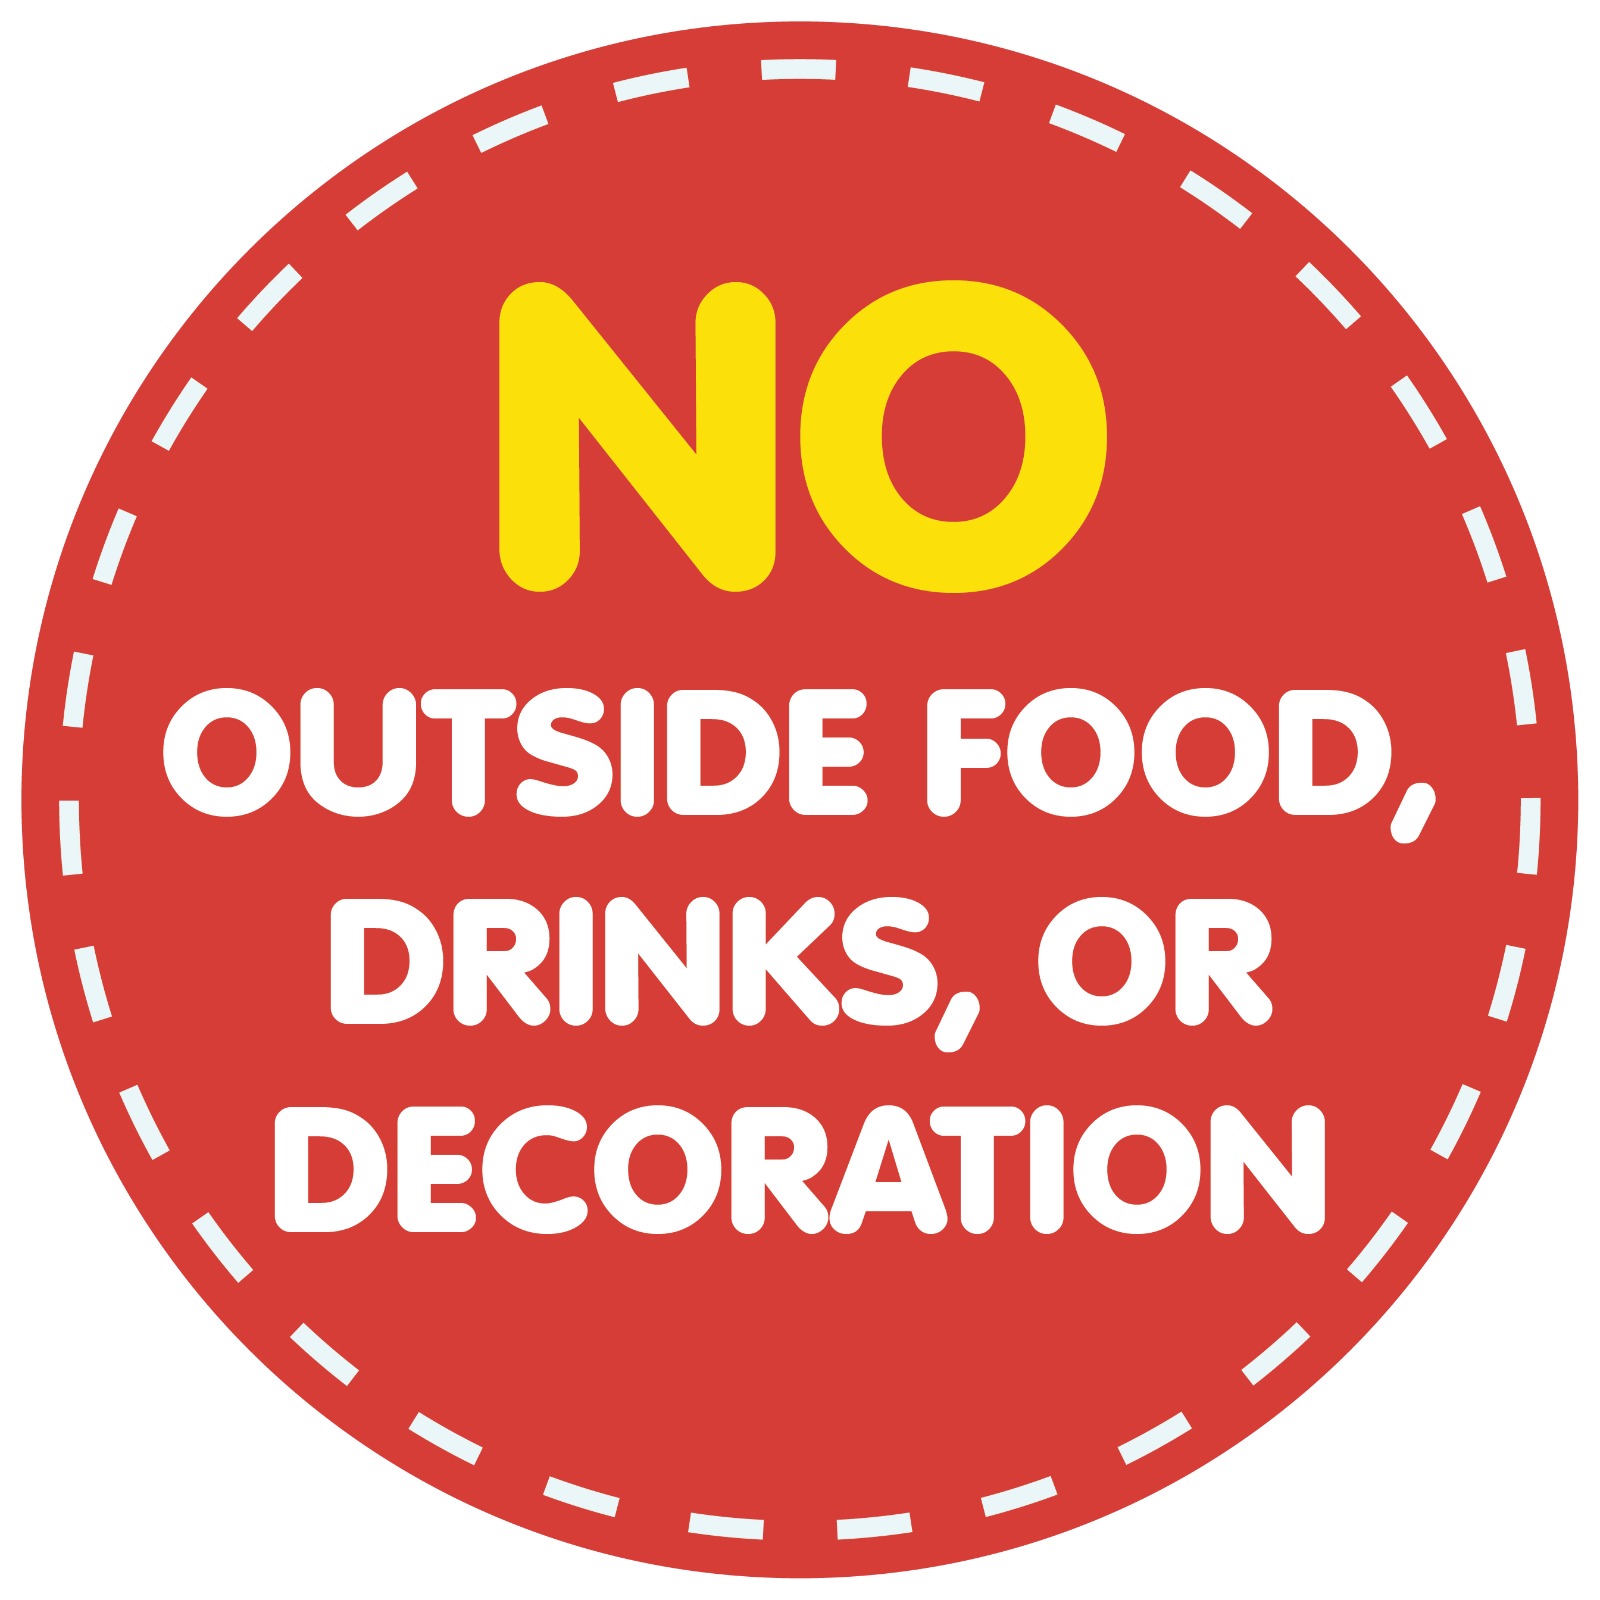 No outside food